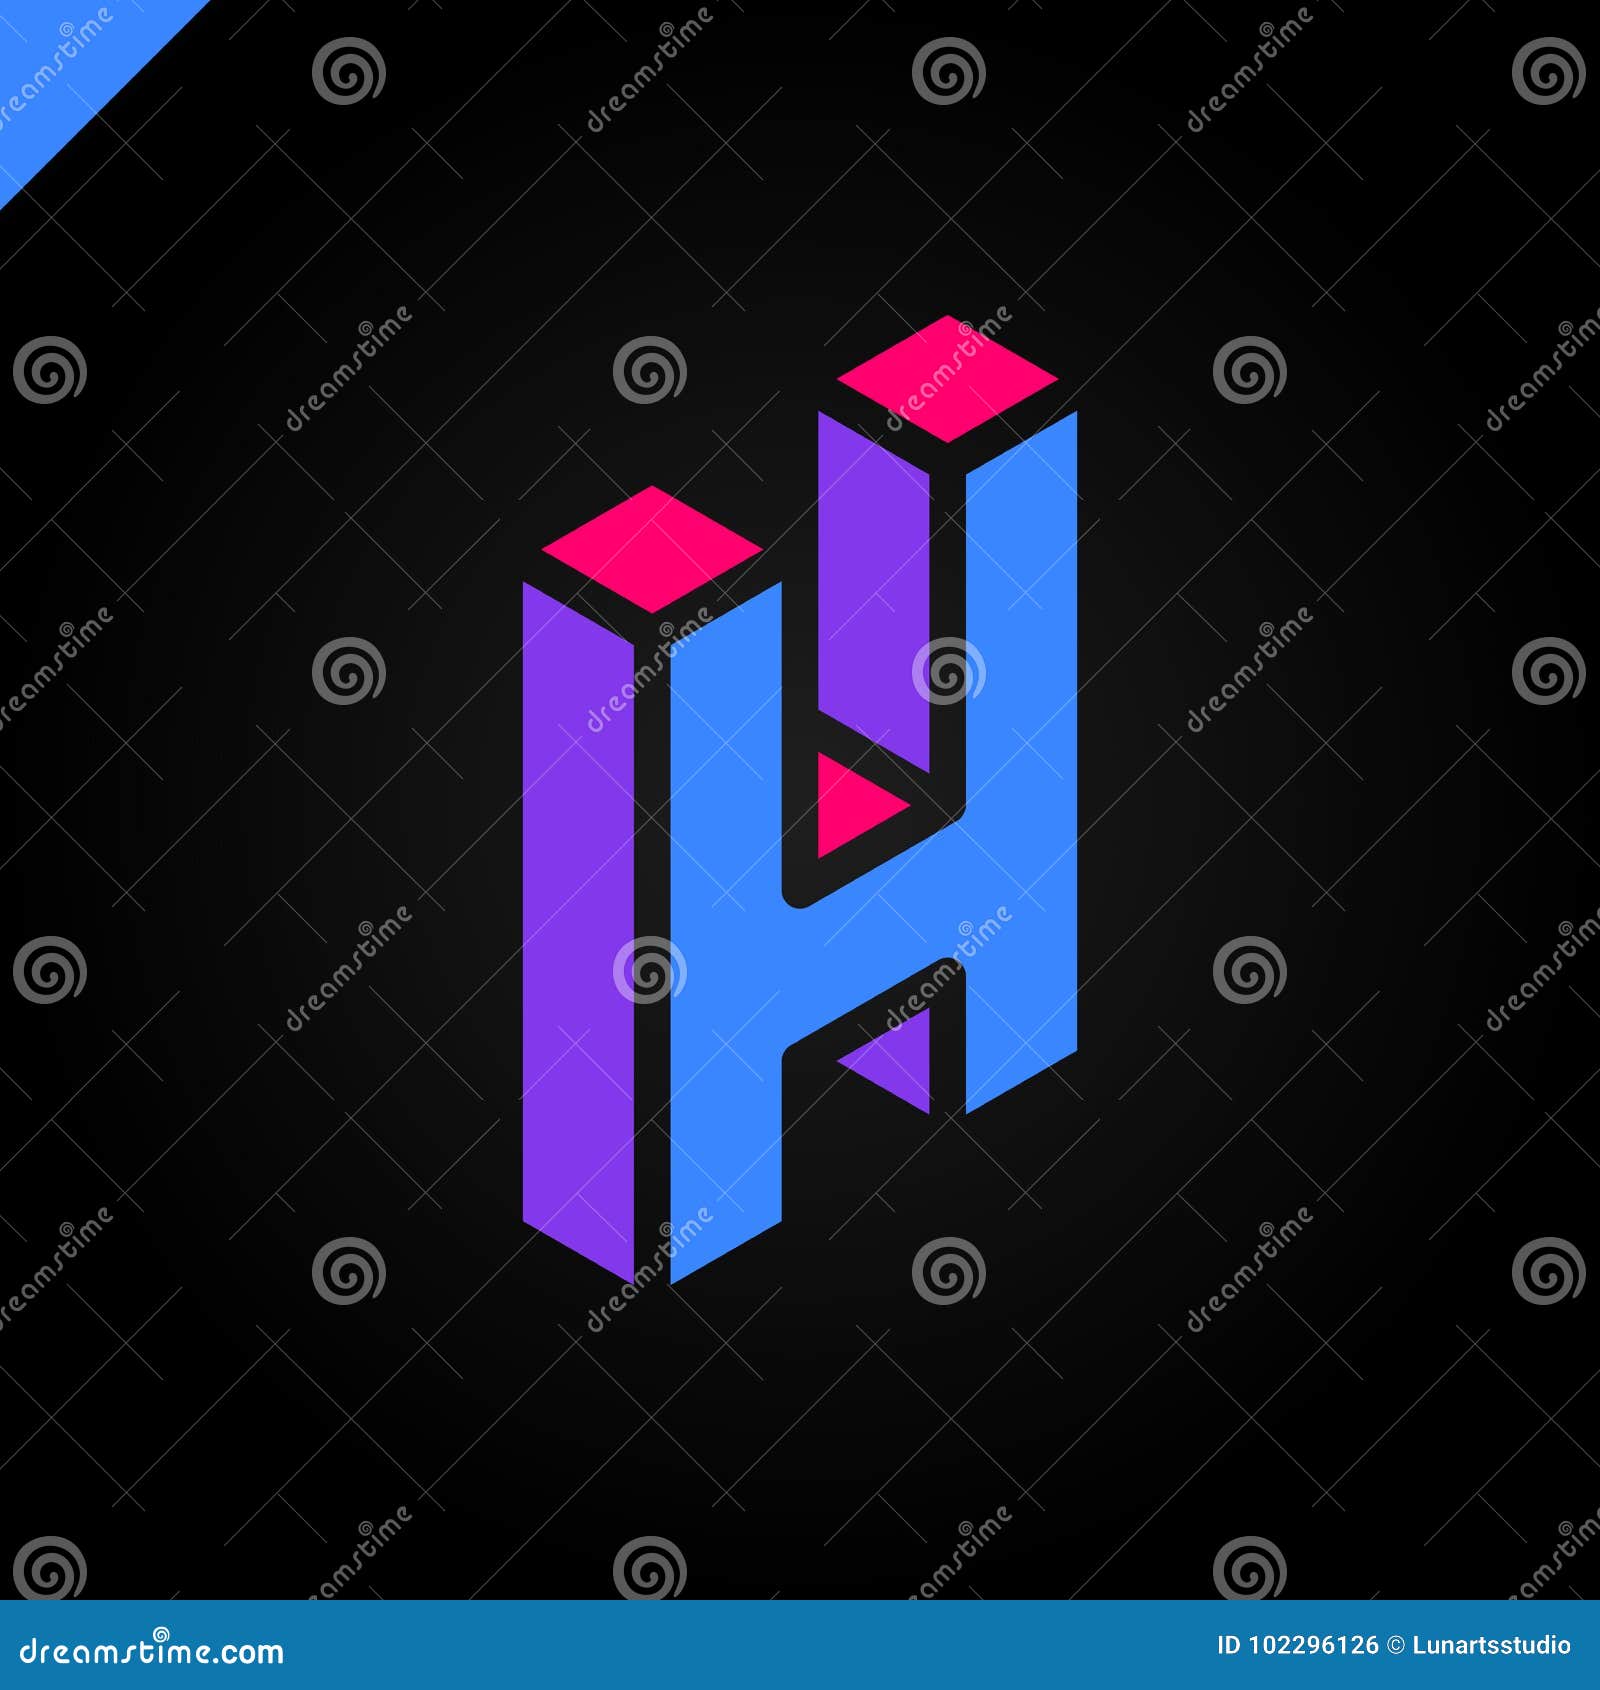 Av h. Логотип с буквой н. Аватарка с буквой h. Логотип с буквами ГН. Буква h.